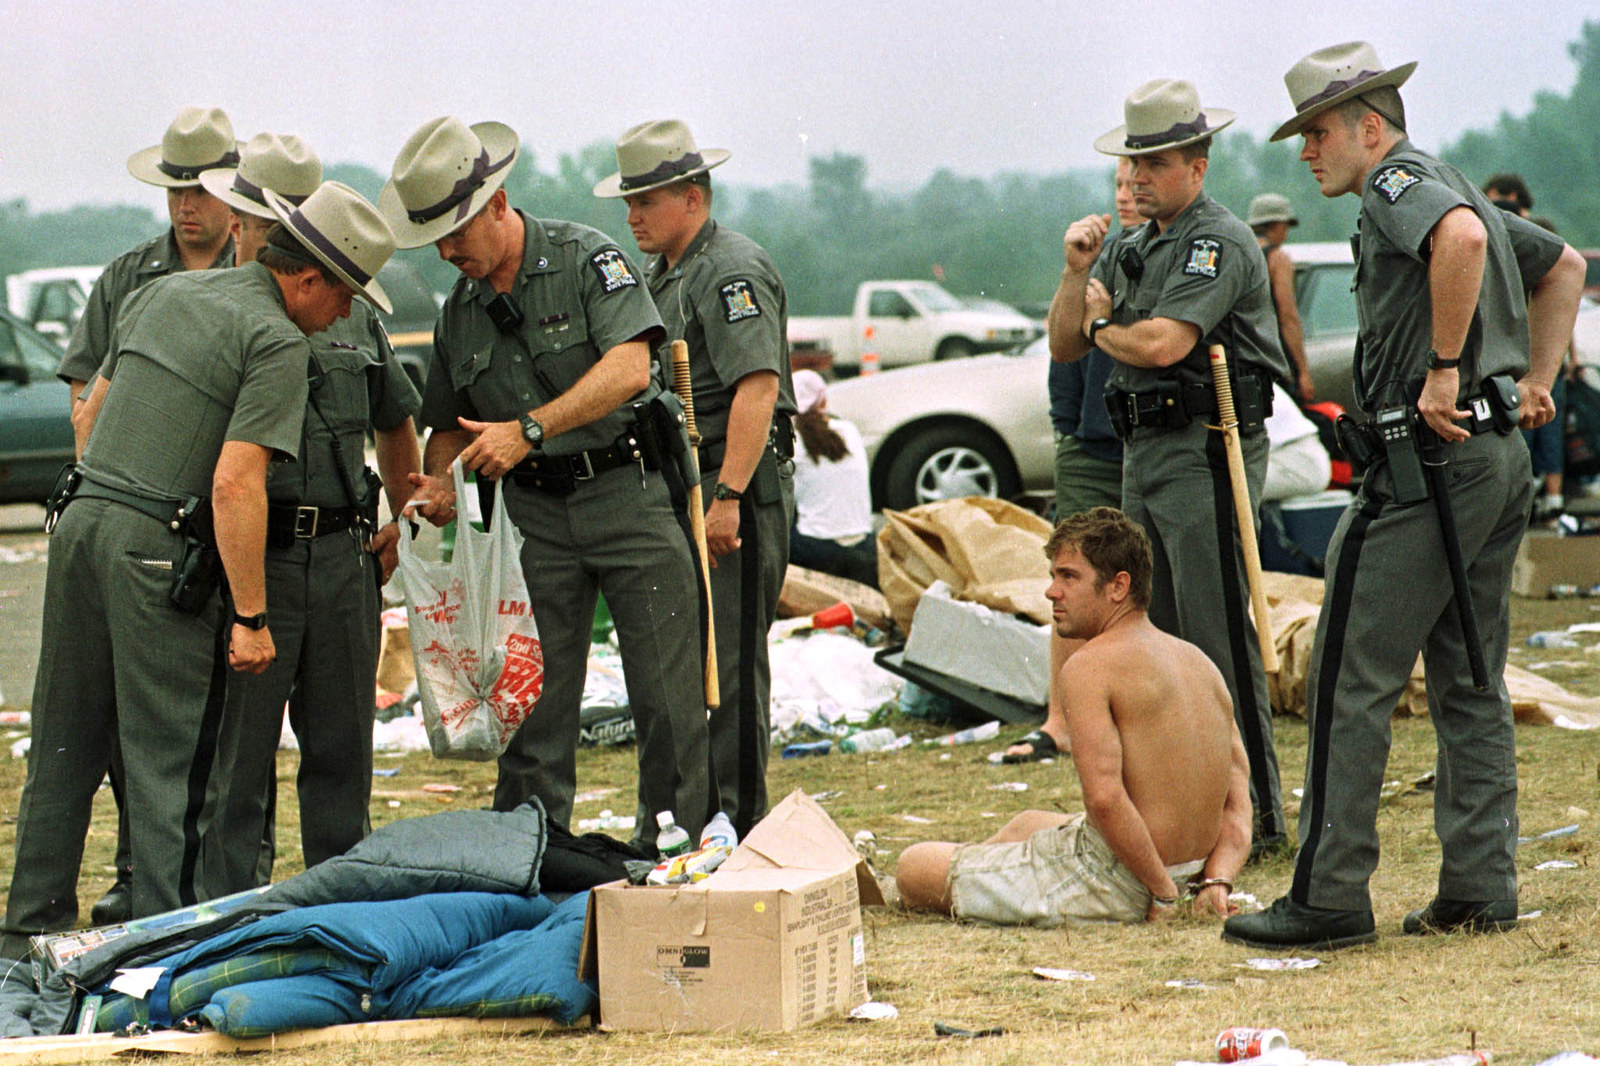 Woodstock 99 pics